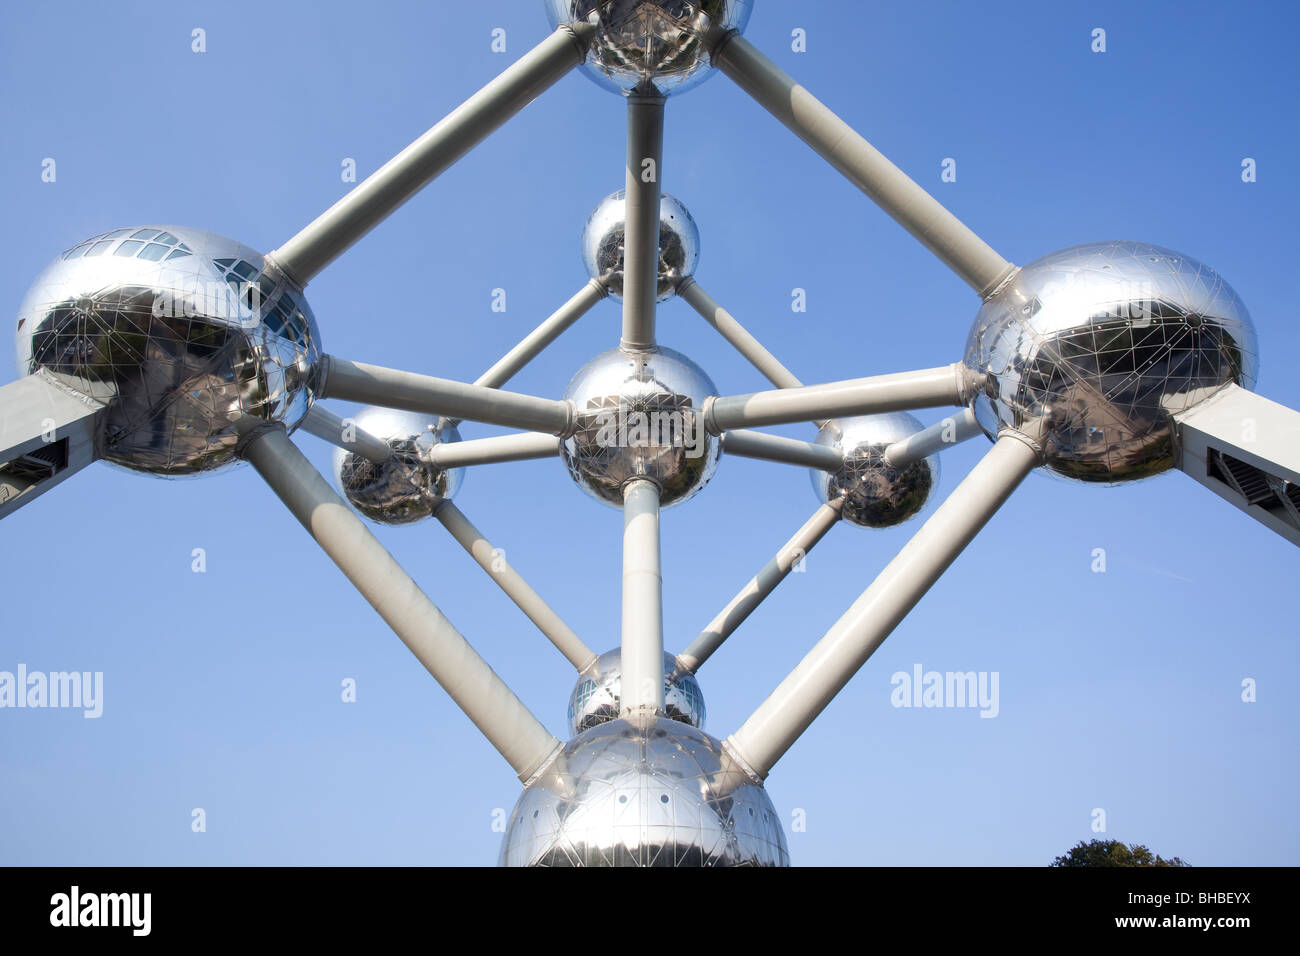 'The Atomium' Brussels Belgium Stock Photo